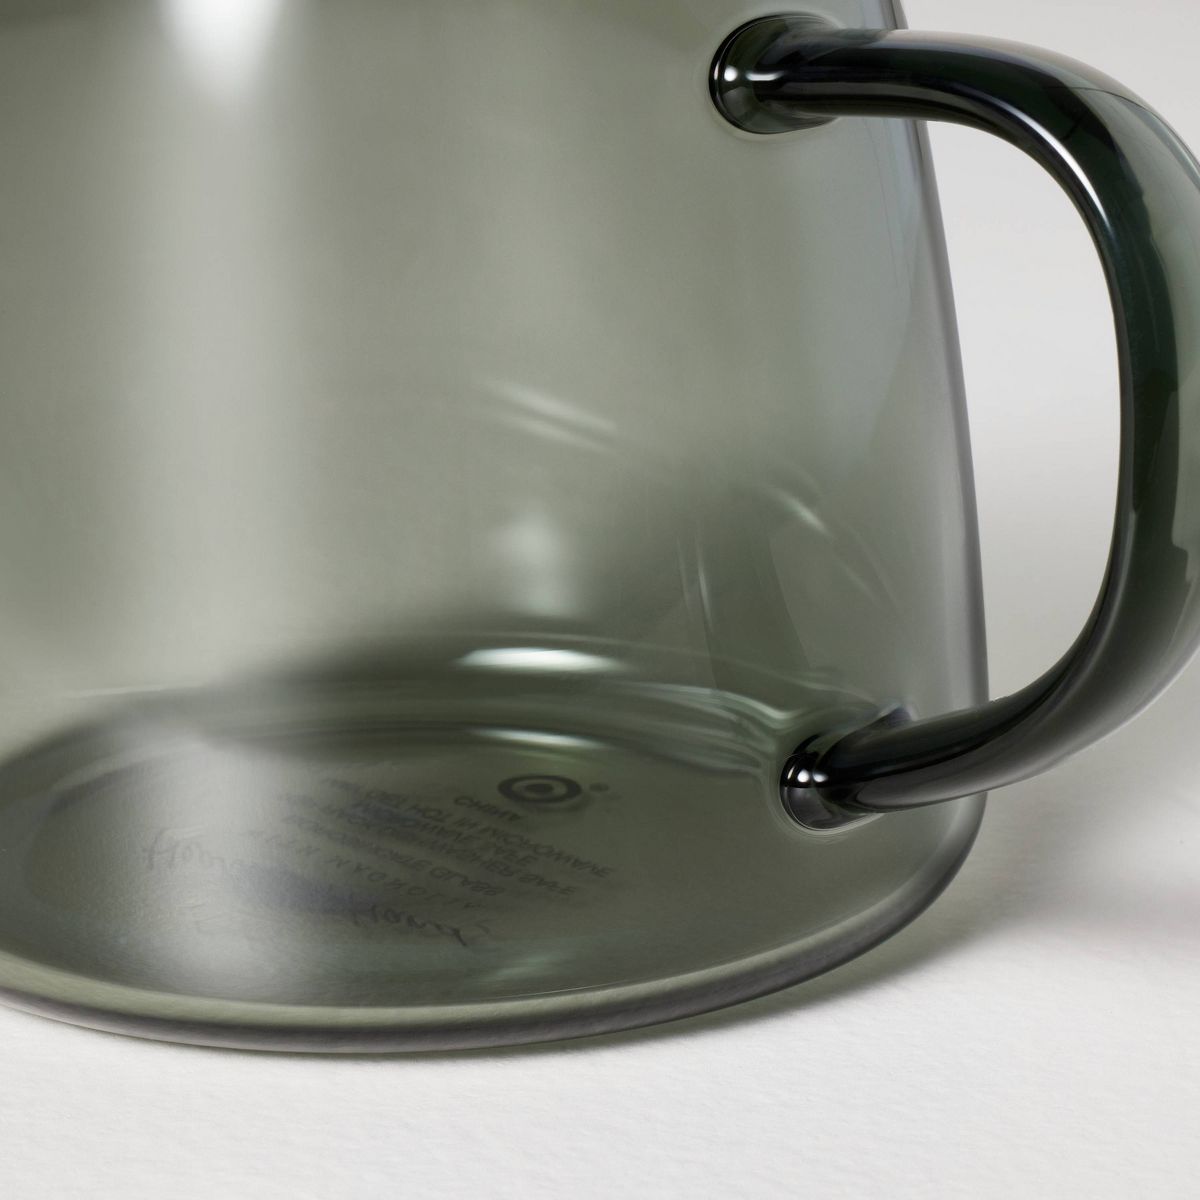 15oz Tinted Glass Mug Smoky Gray - Hearth & Hand™ with Magnolia | Target